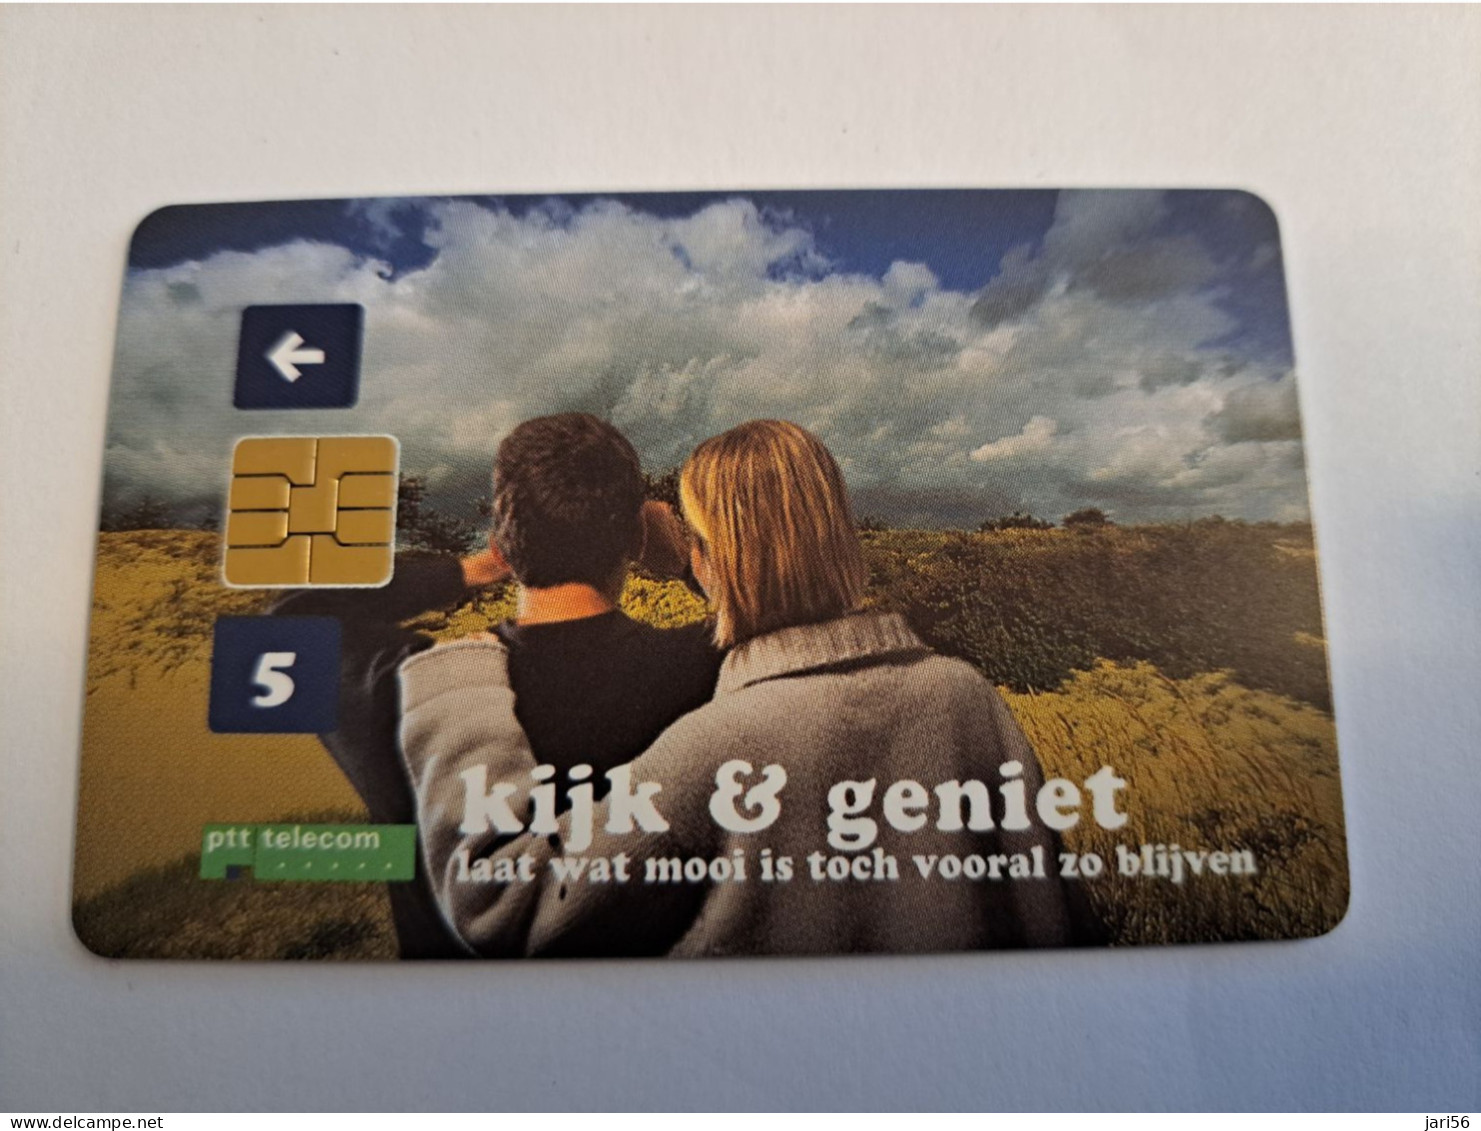 NETHERLANDS  HFL 5,00    CC  MINT CHIP CARD   / COMPLIMENTSCARD / FROM SERIE / MINT   ** 15958** - Cartes GSM, Prépayées Et Recharges